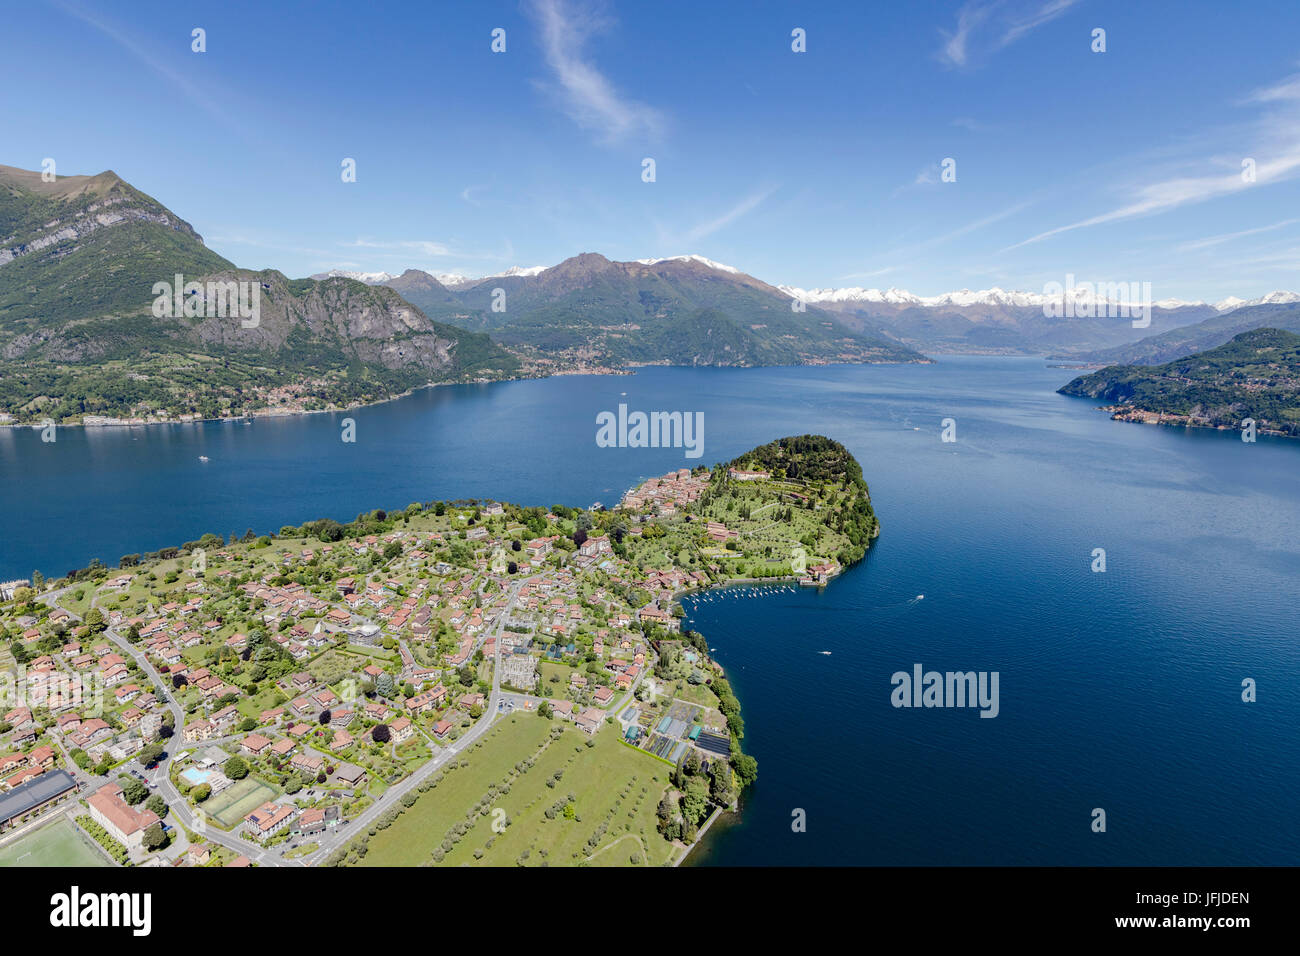 Vue aérienne du village de Bellagio frames par le bleu du lac de Côme et des sommets enneigés en arrière-plan l'Europe Italie Lombardie Banque D'Images